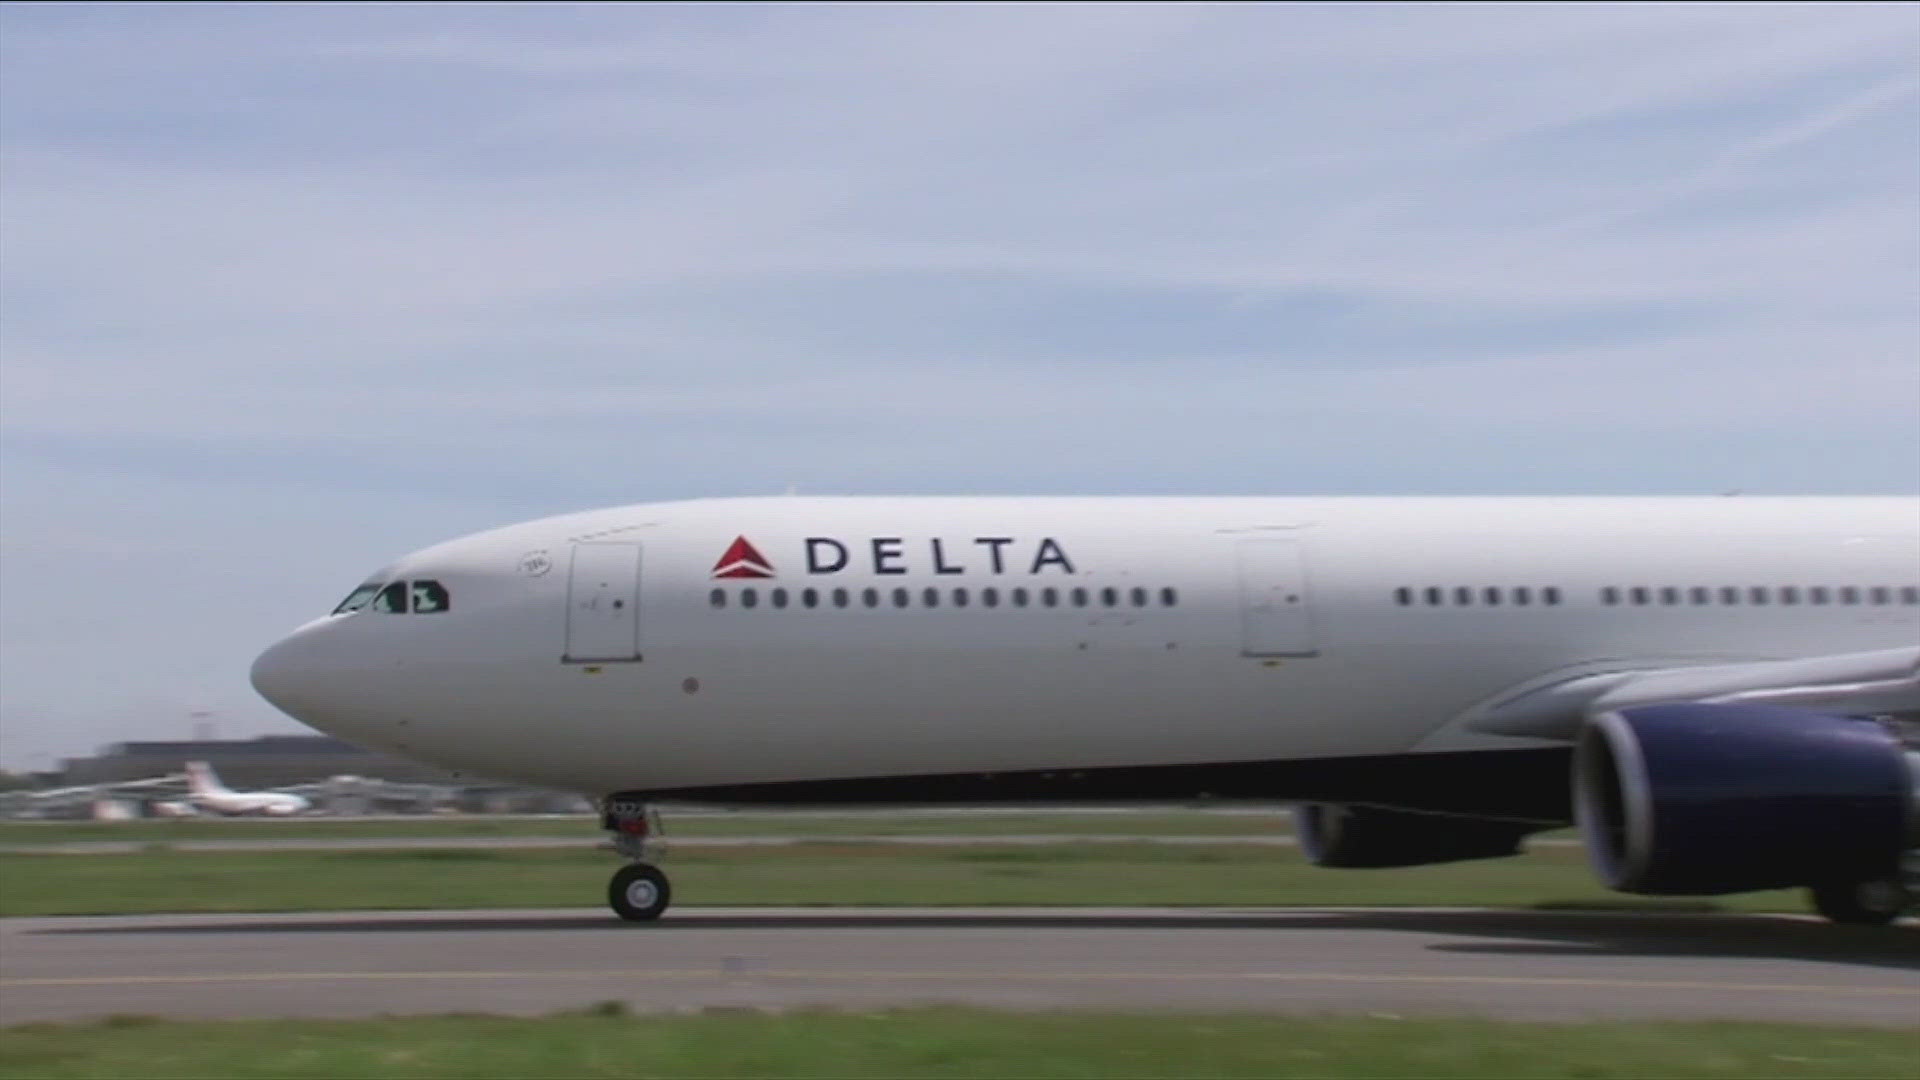 Summer travel season -- Delta ranks highest among airlines